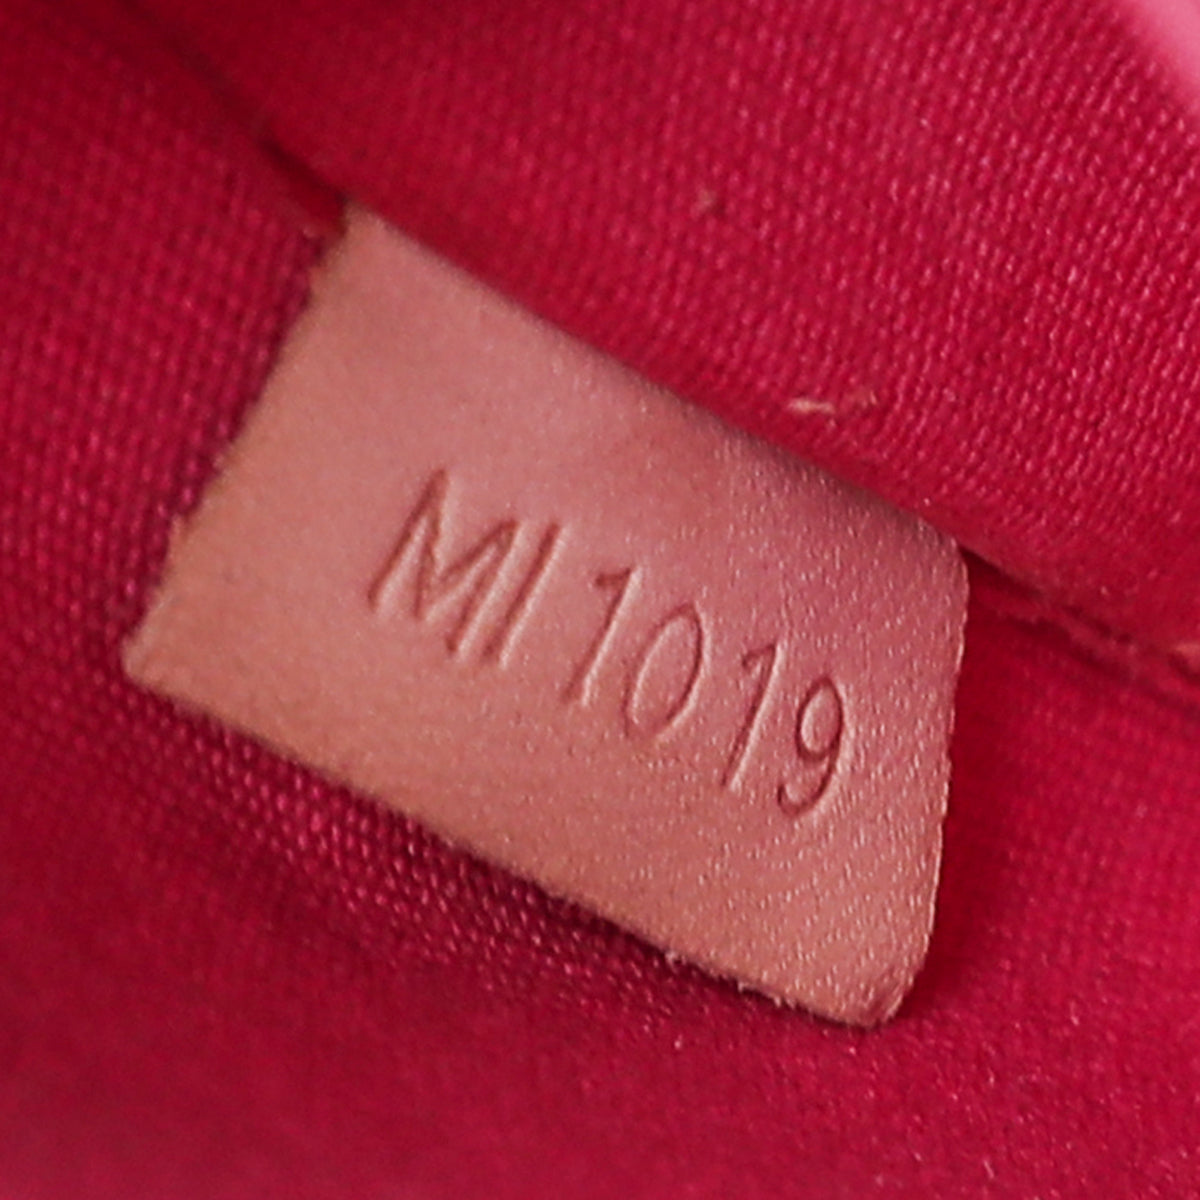 Louis Vuitton Rose Pop Monogram Vernis Alma GM Bag at 1stDibs  louis  vuitton rose bag, louis vuitton alma rose, louis vuitton alma vernis gm